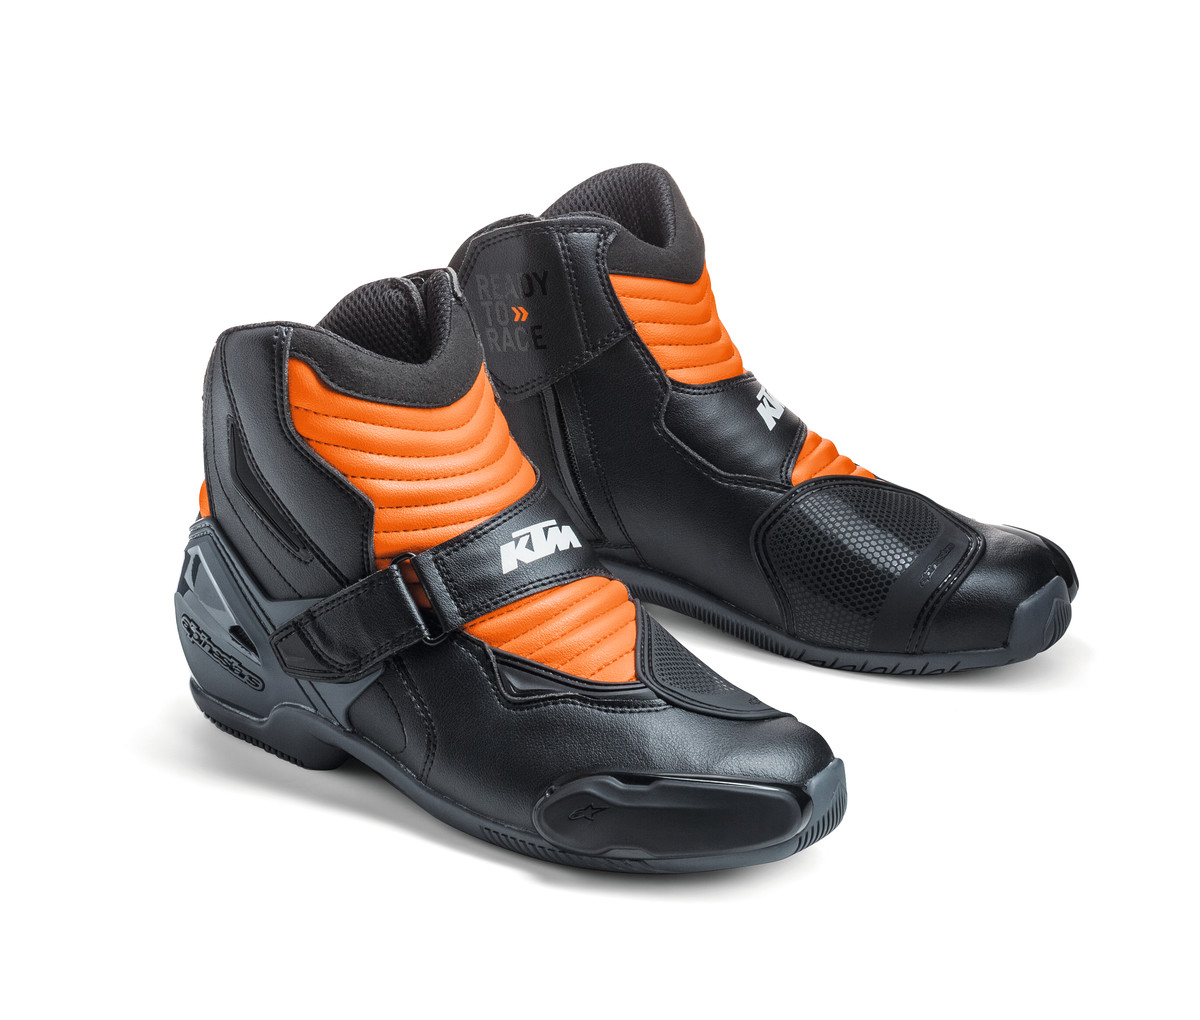 S-MX 1 R Shoes Shoe size 46